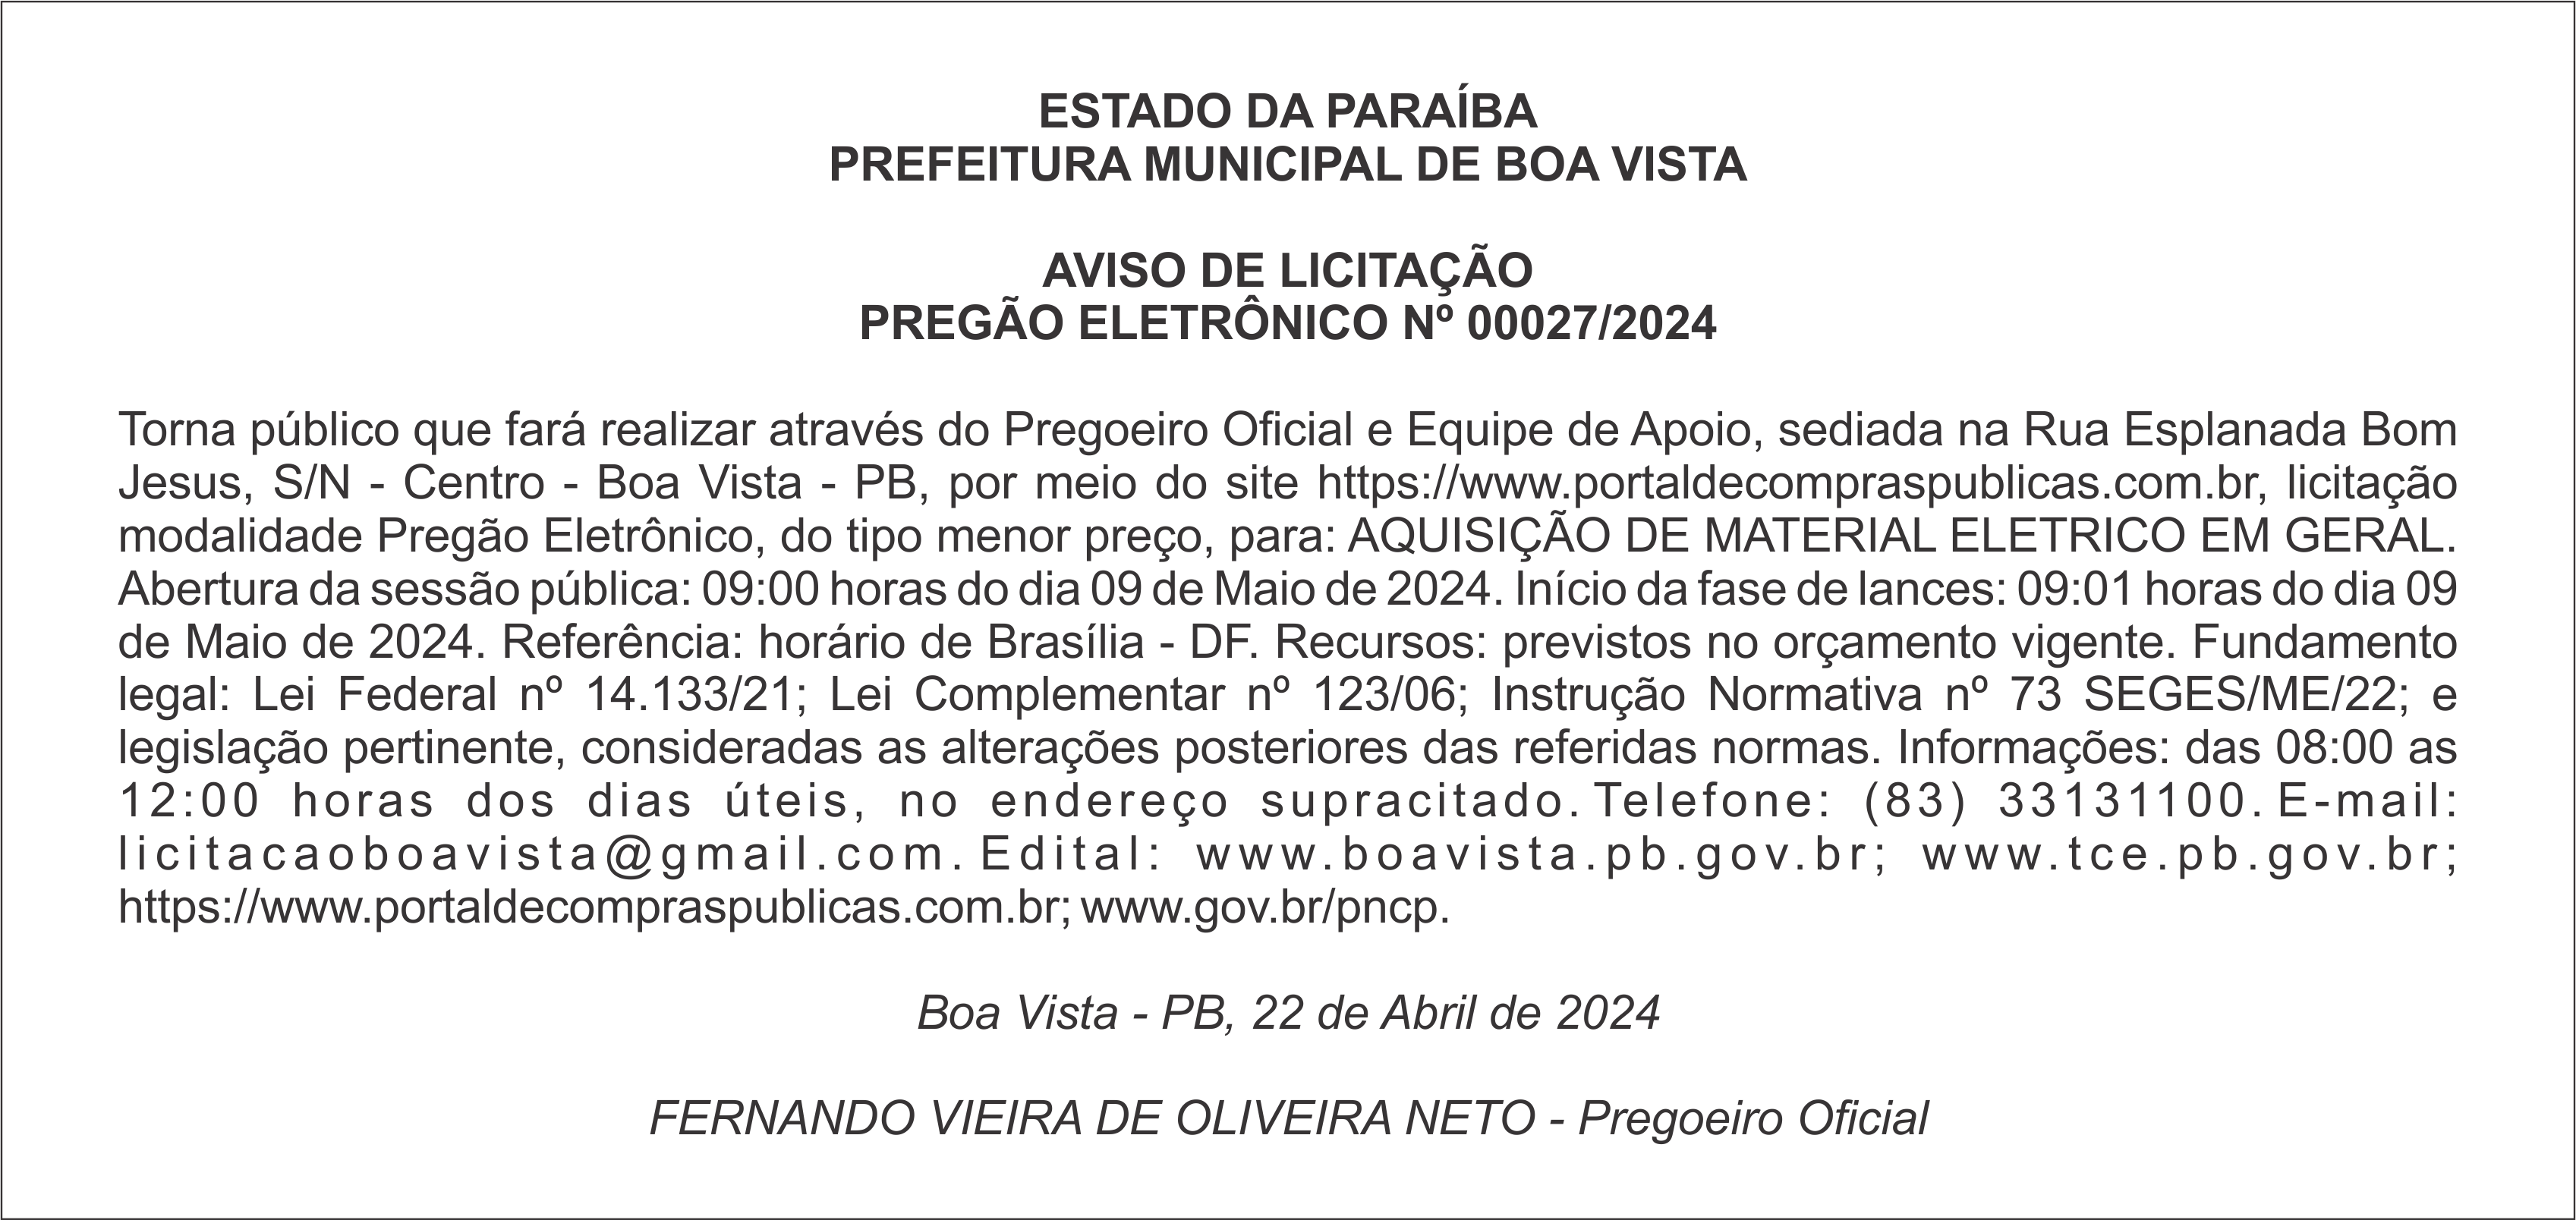 PREFEITURA MUNICIPAL DE BOA VISTA  – AVISO DE LICITAÇÃO – PREGÃO ELETRÔNICO Nº 00027/2024